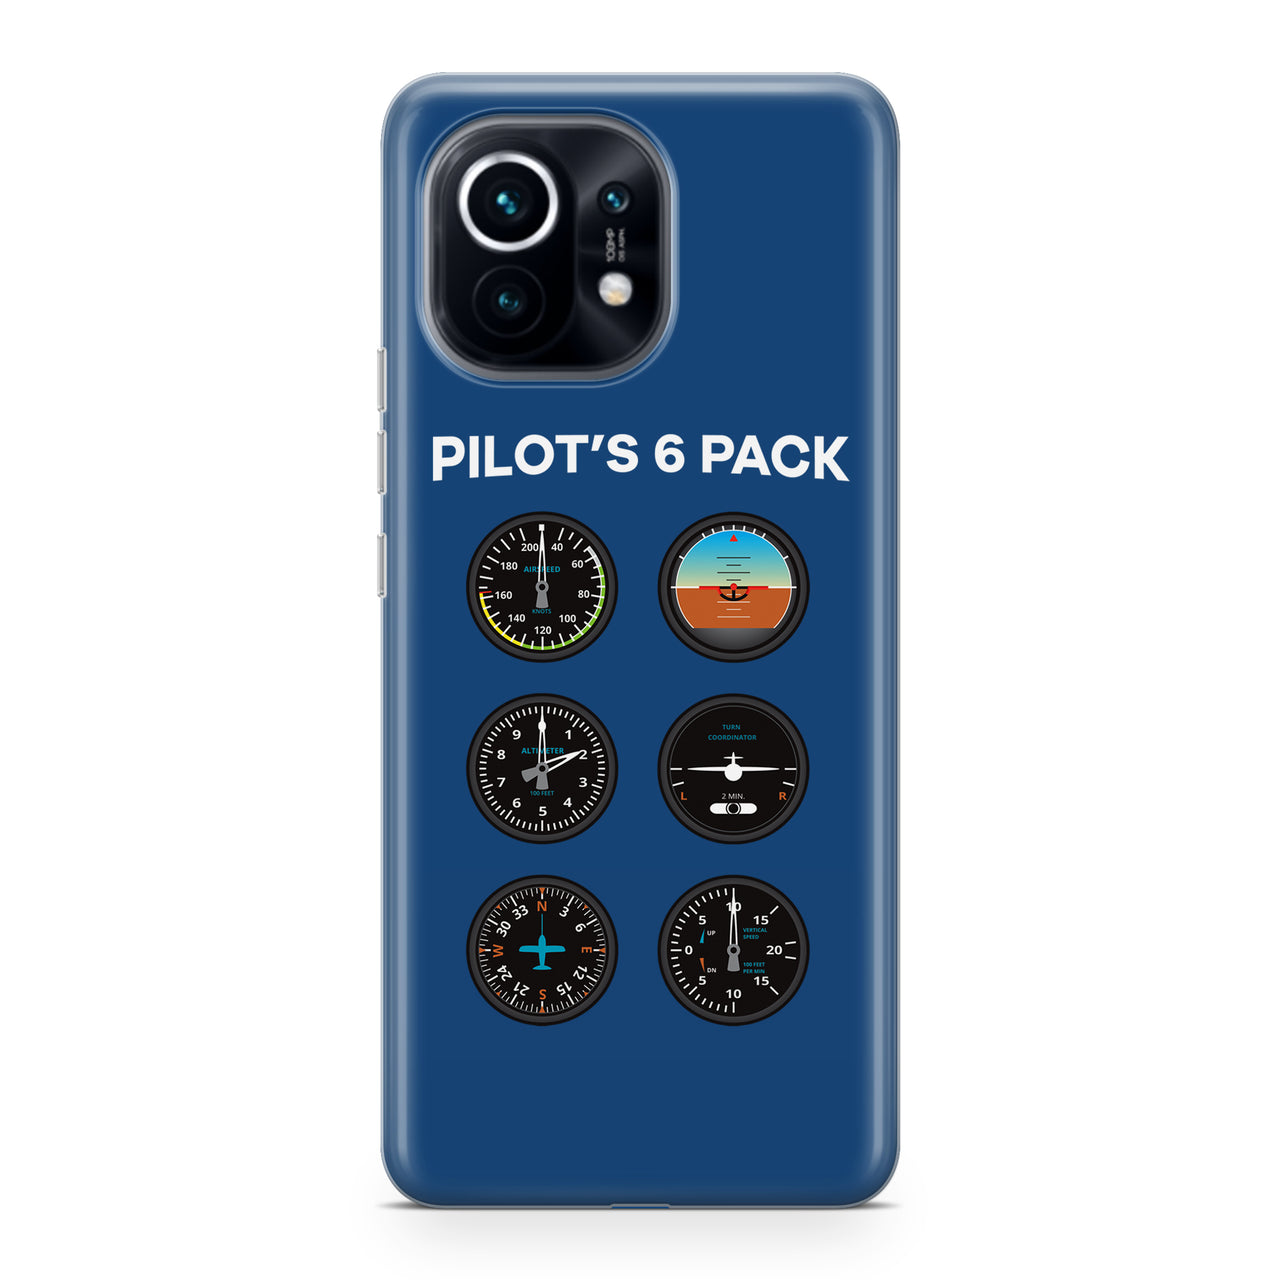 Pilot's 6 Pack Designed Xiaomi Cases